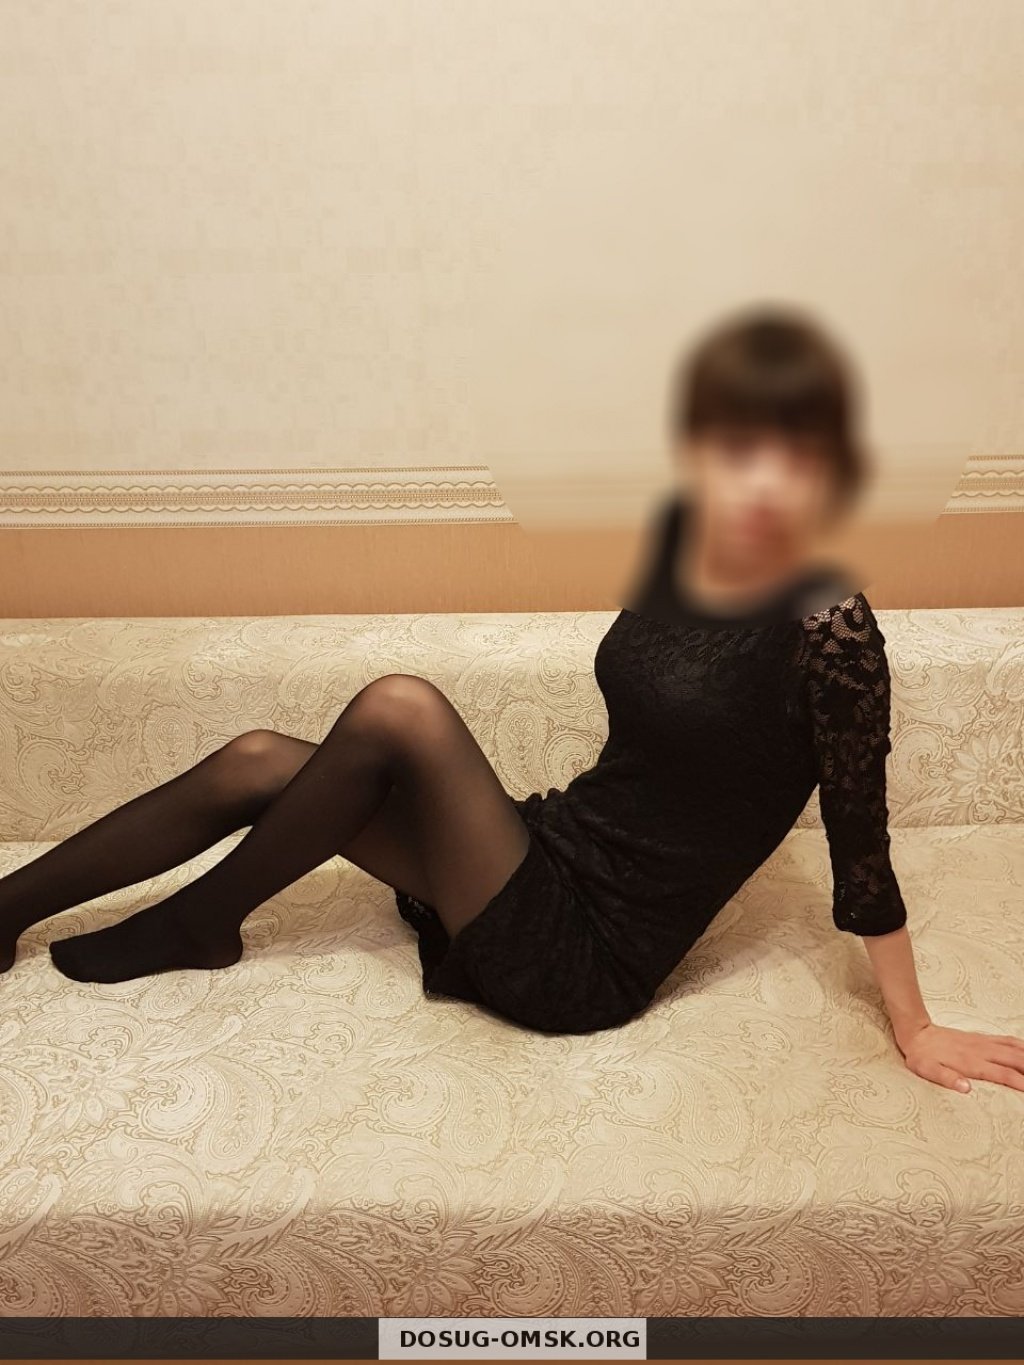 Анастасия: проститутки индивидуалки в Омске